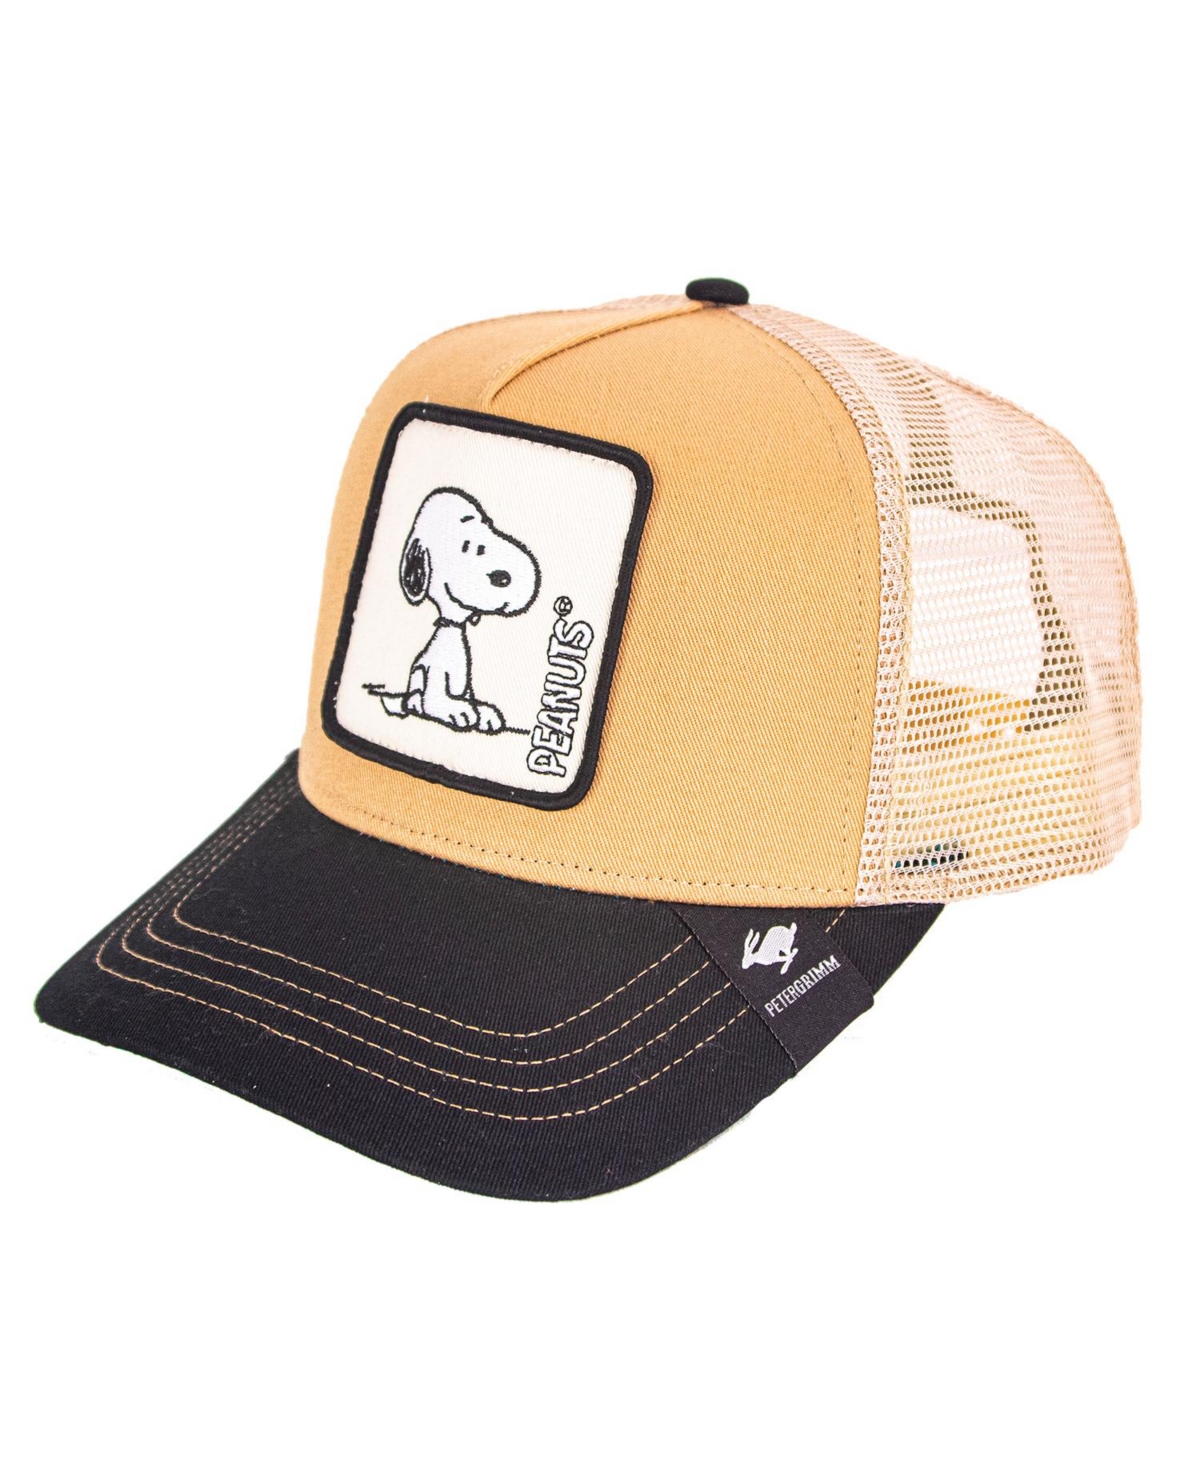 Snoopy Peanuts Trucker Hat - Tan